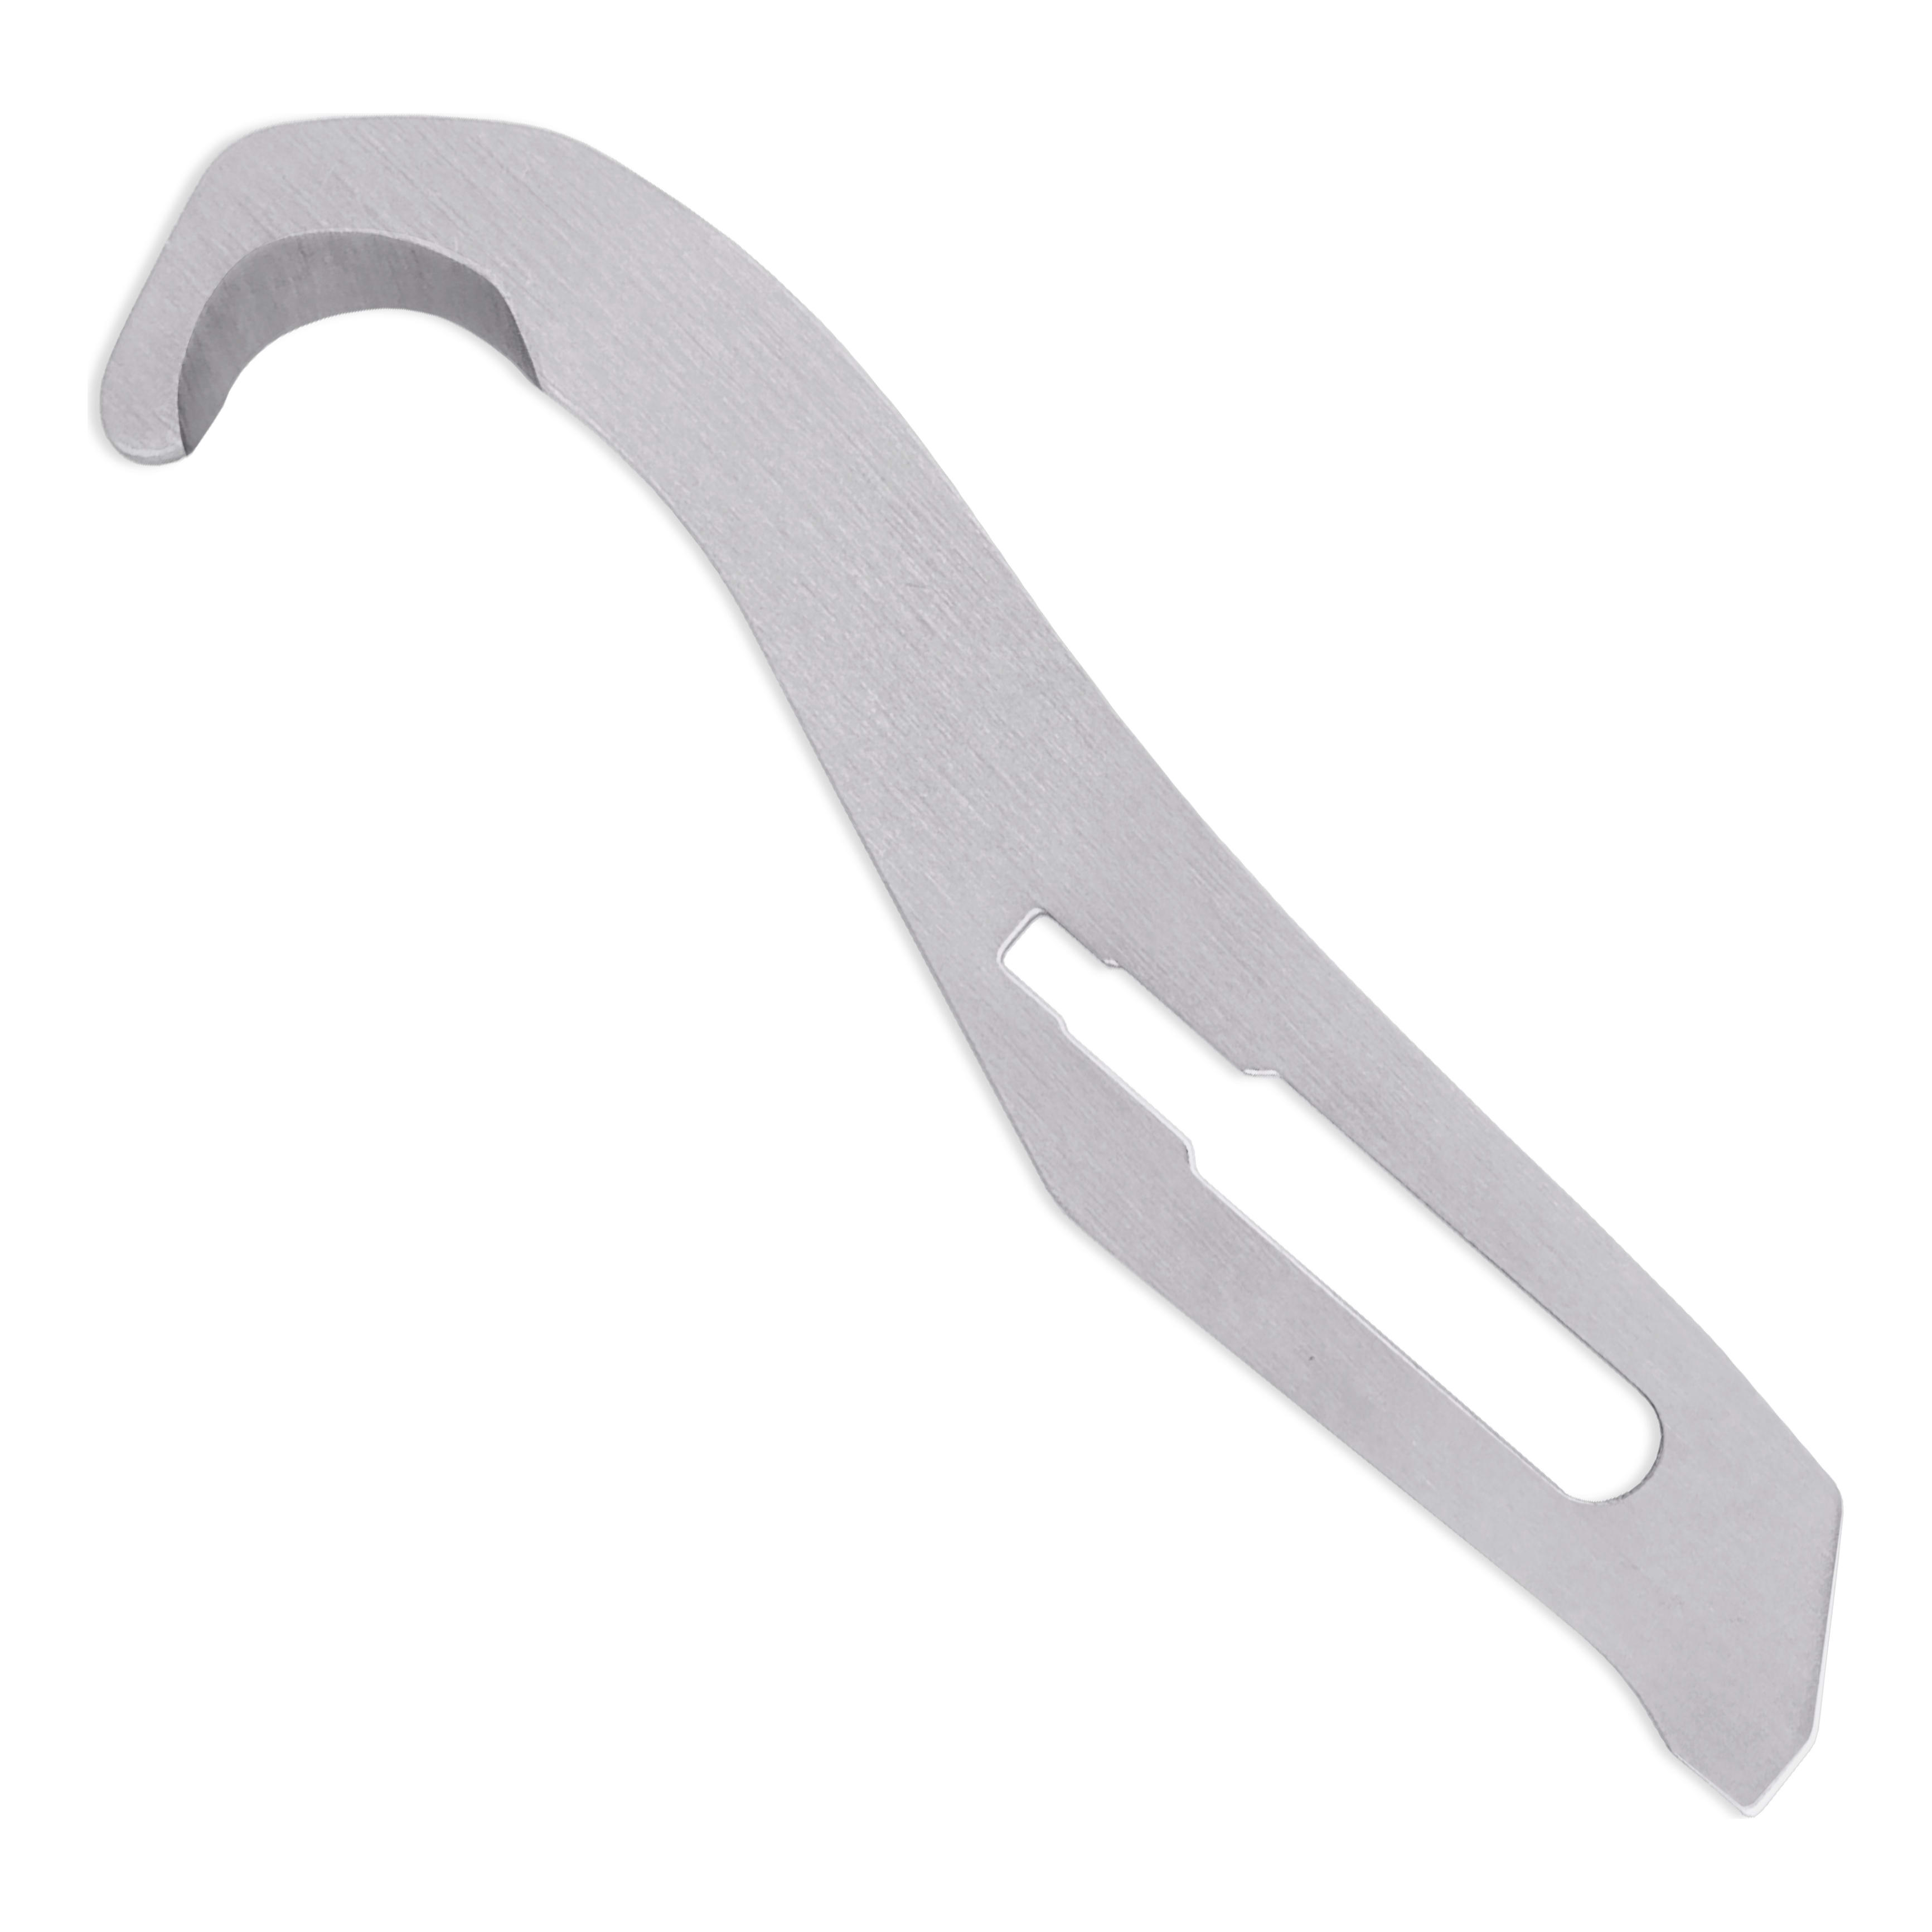 Havalon® Gut Hook Blades - 3 Pack